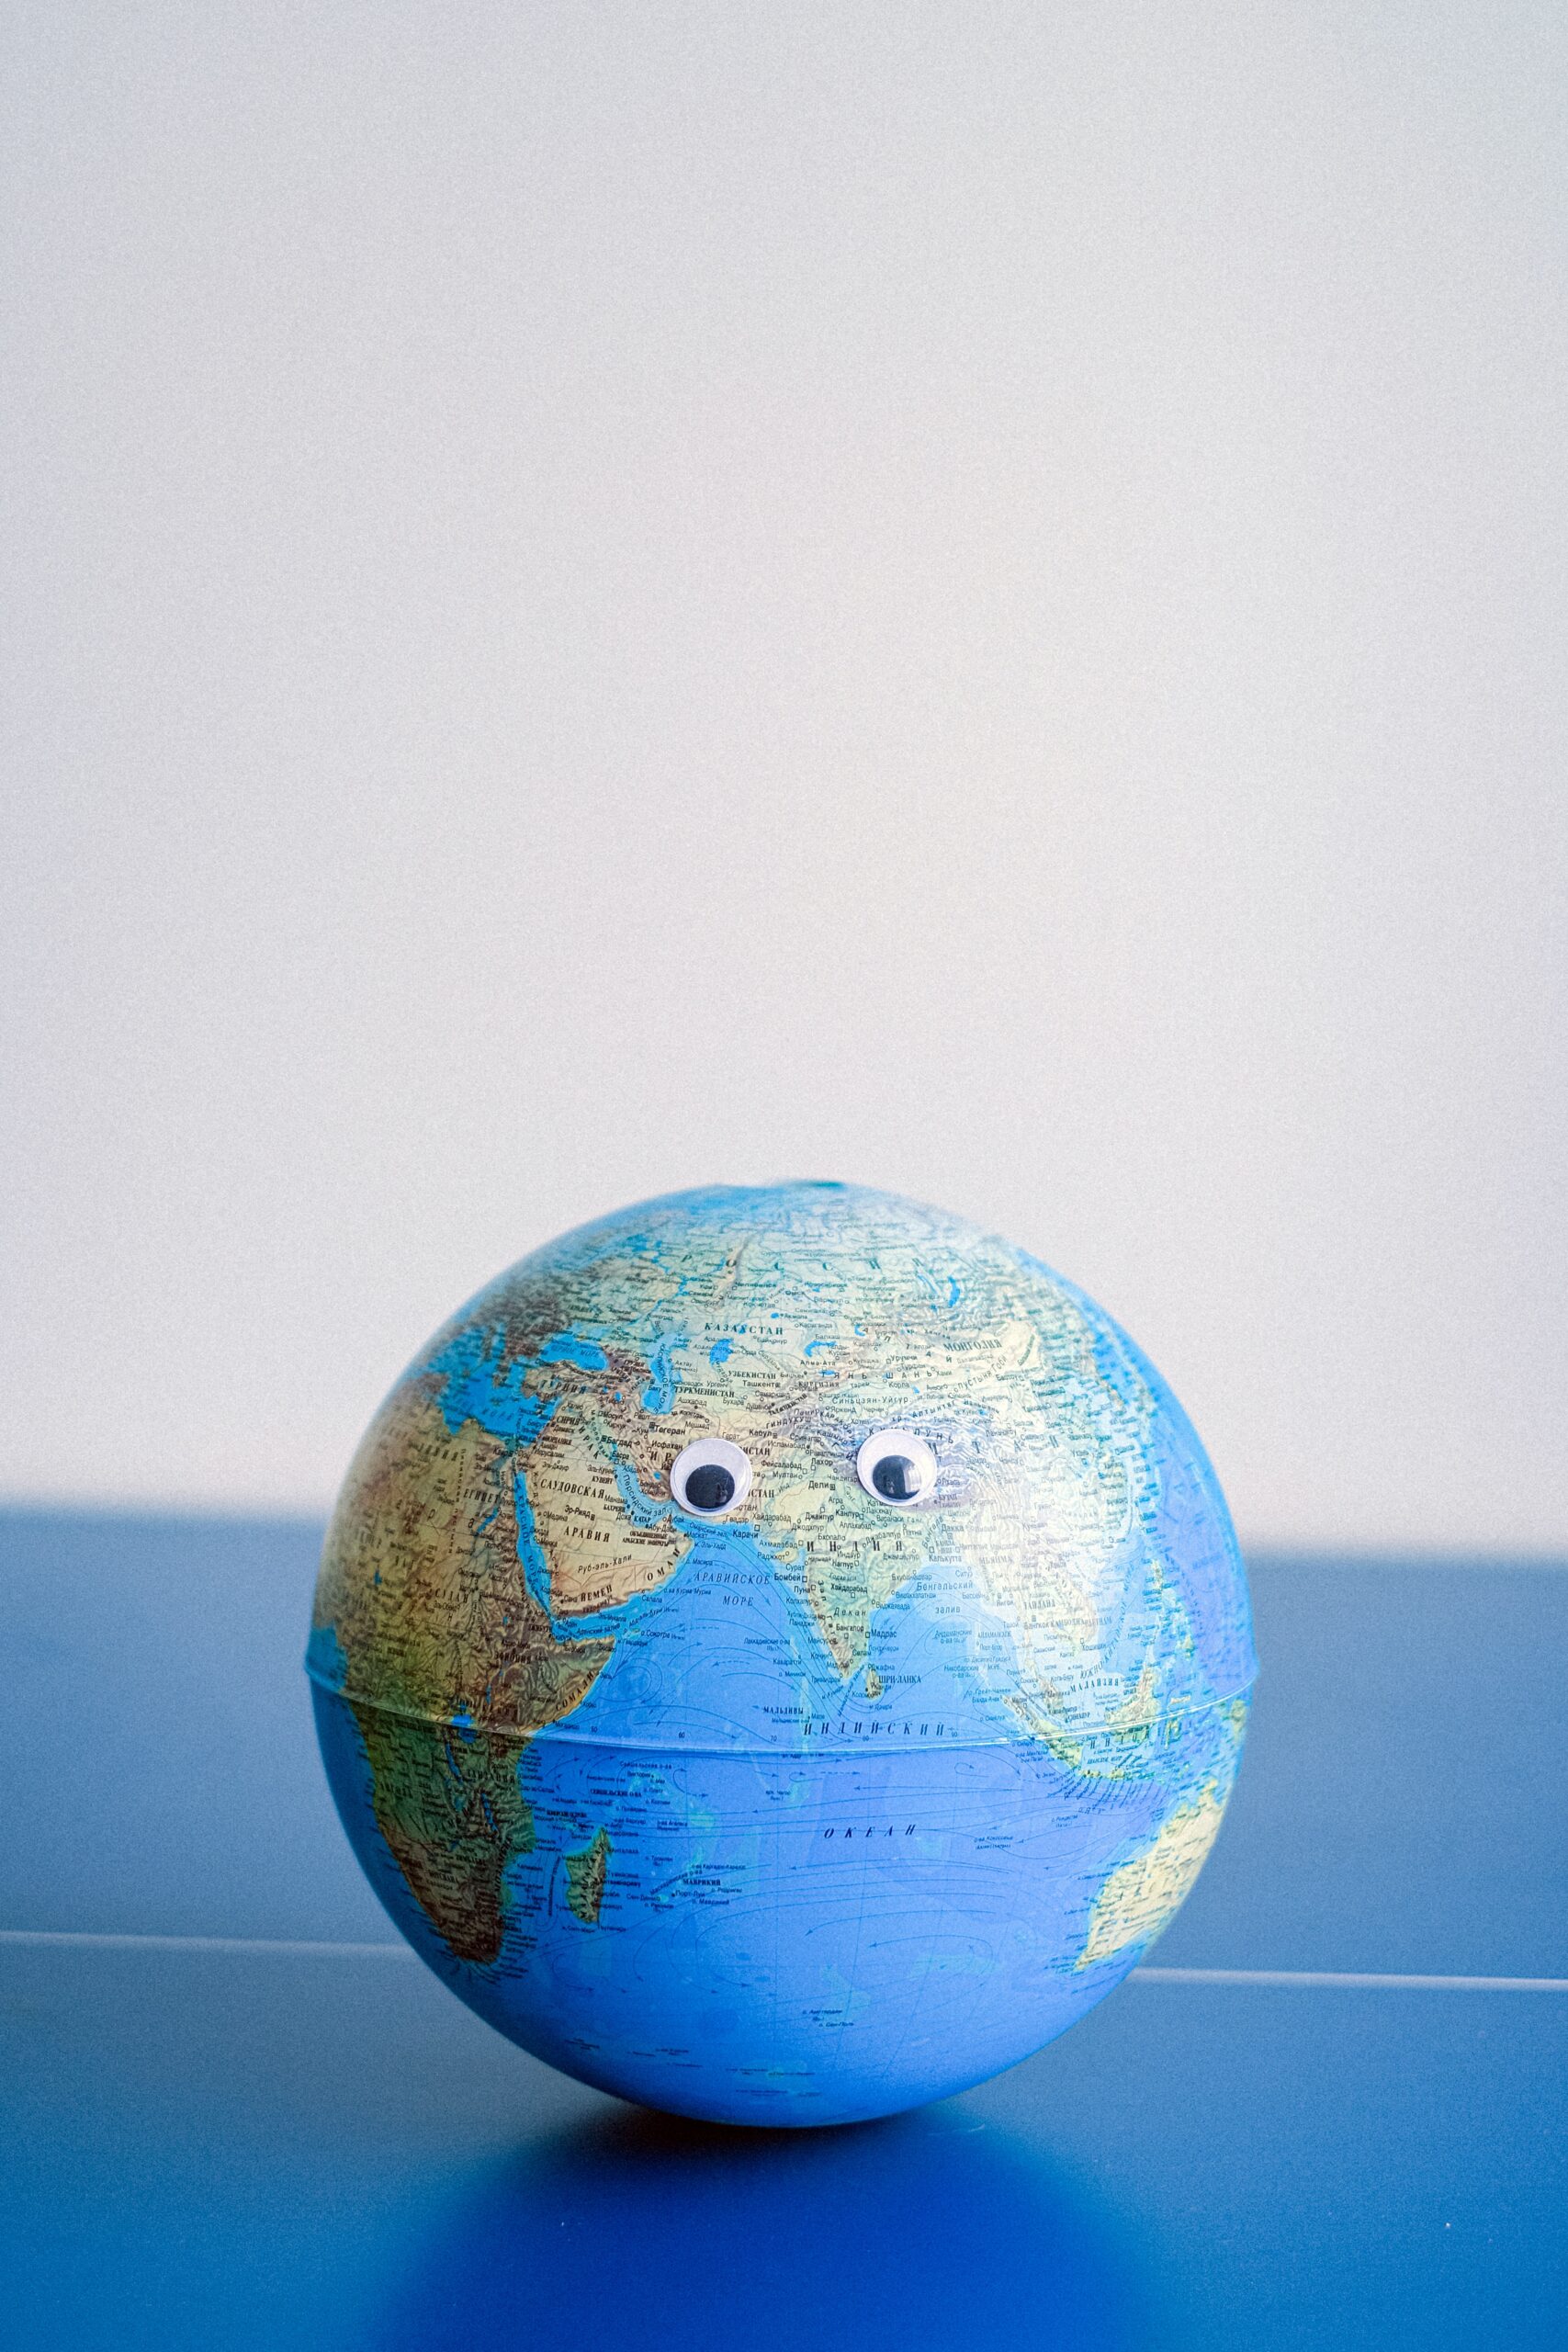 Bild eines Globus, dem Augen aufgeklebt sind, so dass er aussieht wie ein Gesicht.